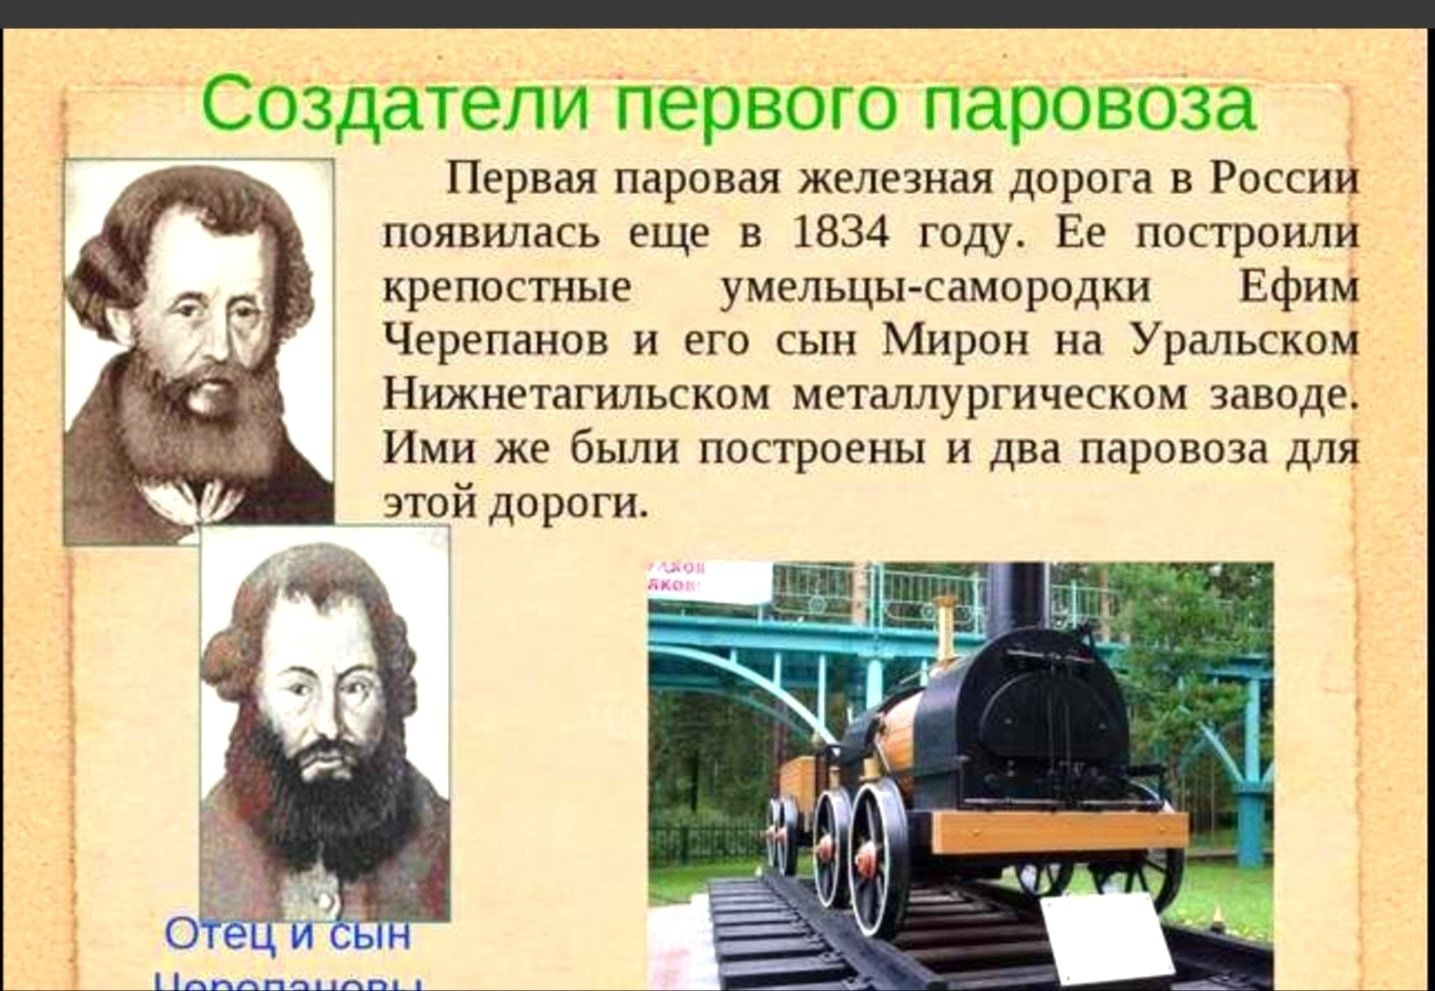 1 паровоз в мире. Первый паровоз в мире и его изобретатель. Первый изобретатель паровоза в России. Черепановы создатели первого российского паровоза. Изобретатели паровоза Черепановы.